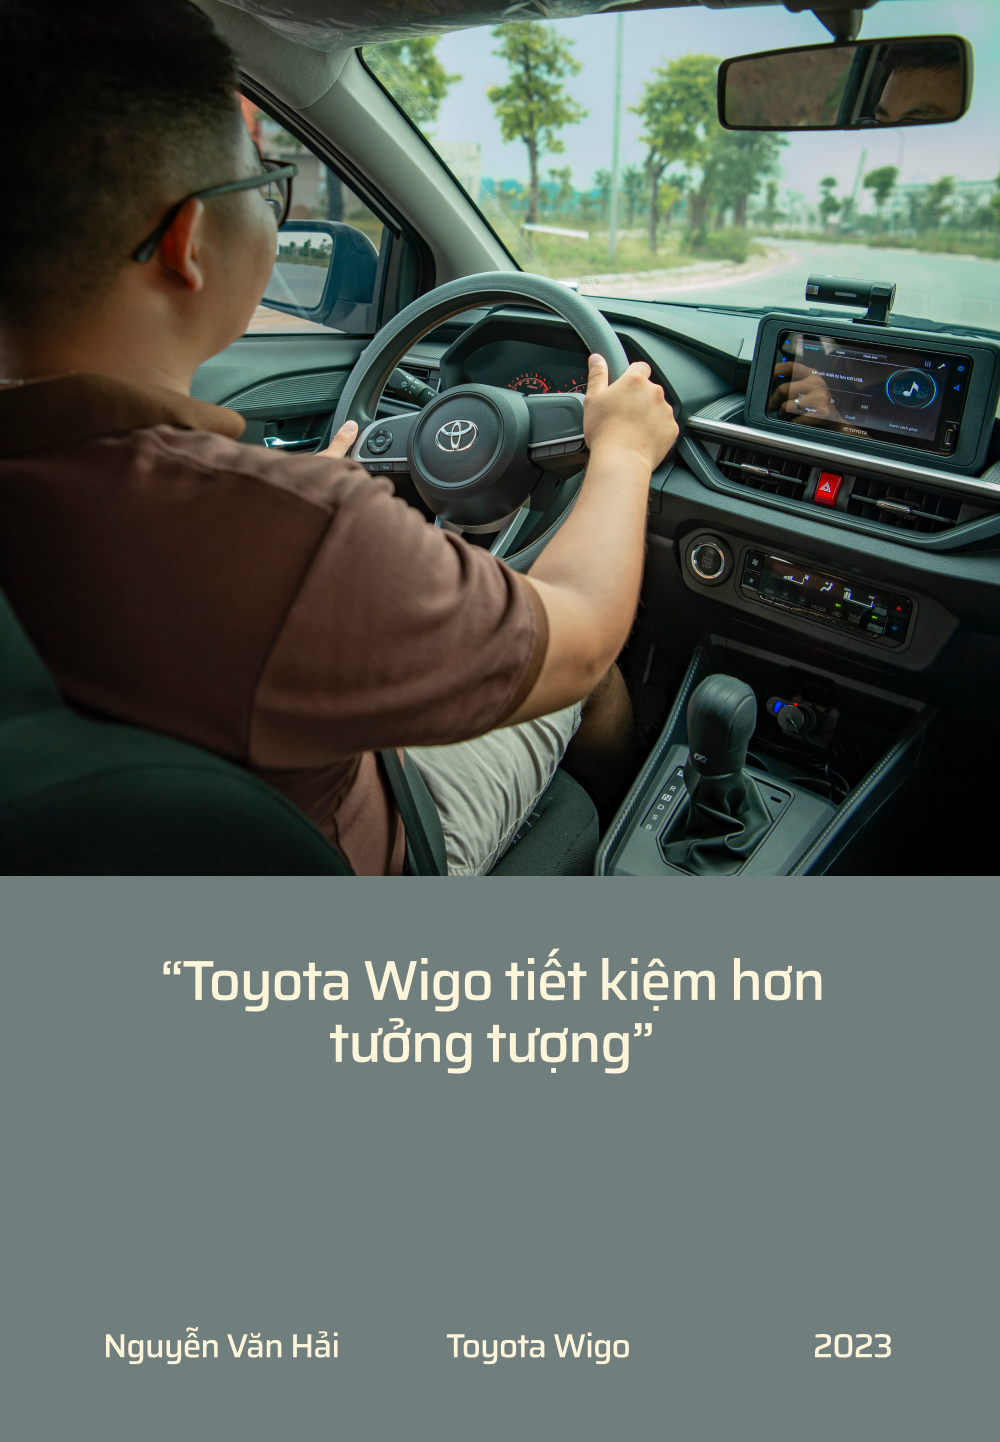 ‘Toyota Wigo không phải xe hạng A tốt nhất, có nhược điểm nhưng vẫn mua vì an tâm’ - Ảnh 3.